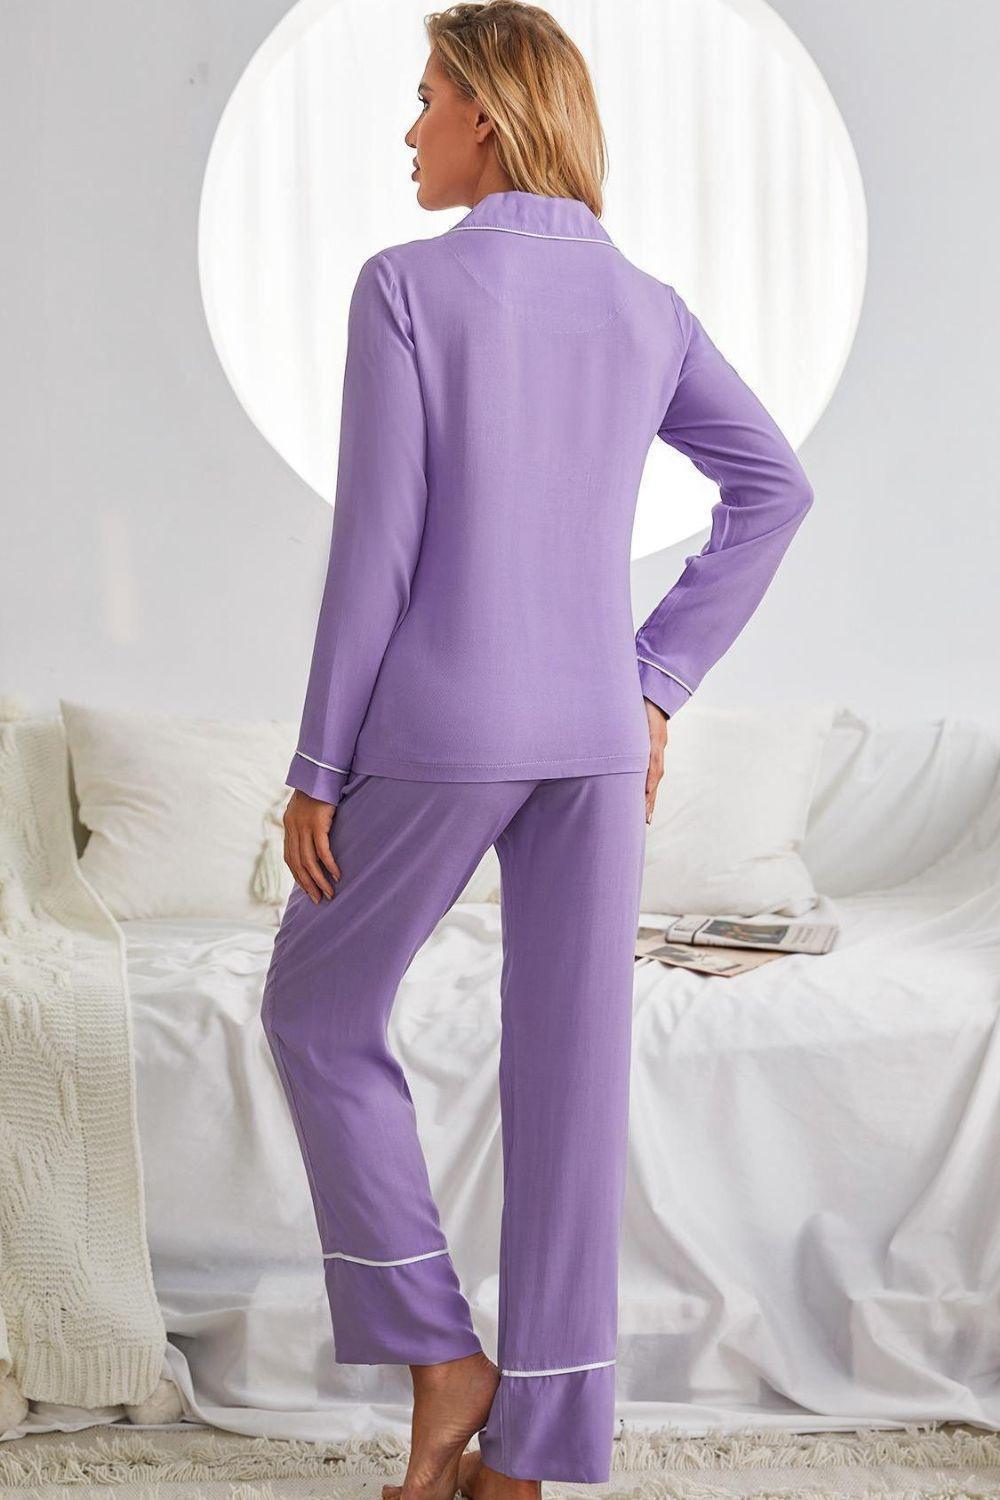 Purple Two Piece Pajama With White Piping - MXSTUDIO.COM